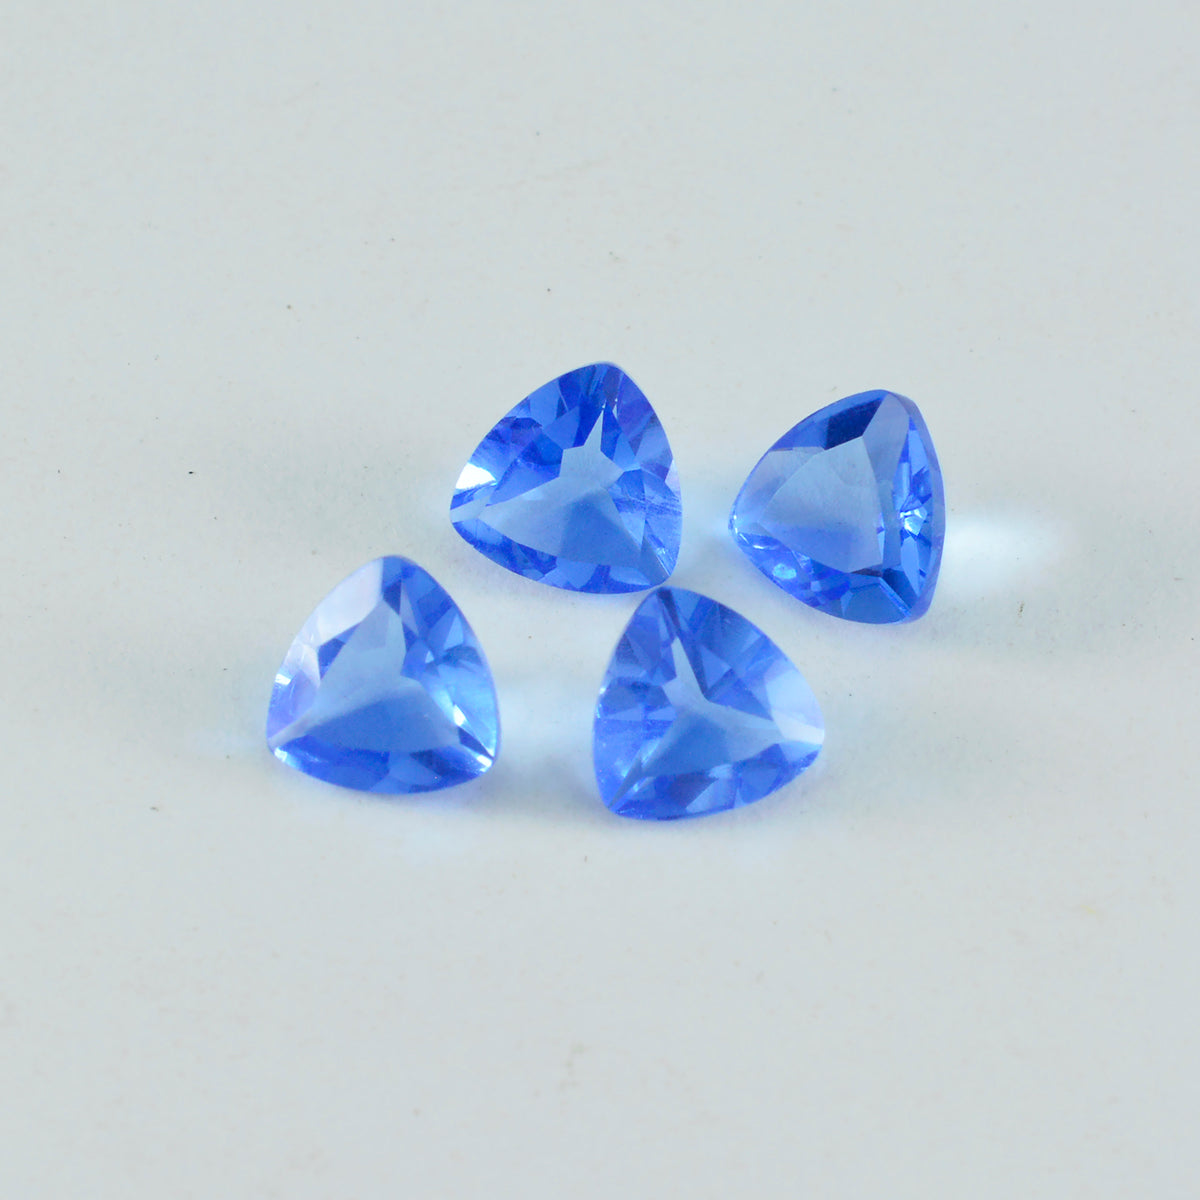 Riyogems 1 pieza de topacio azul CZ facetado 0.118 x 0.197 in forma octágono calidad AA piedra preciosa suelta